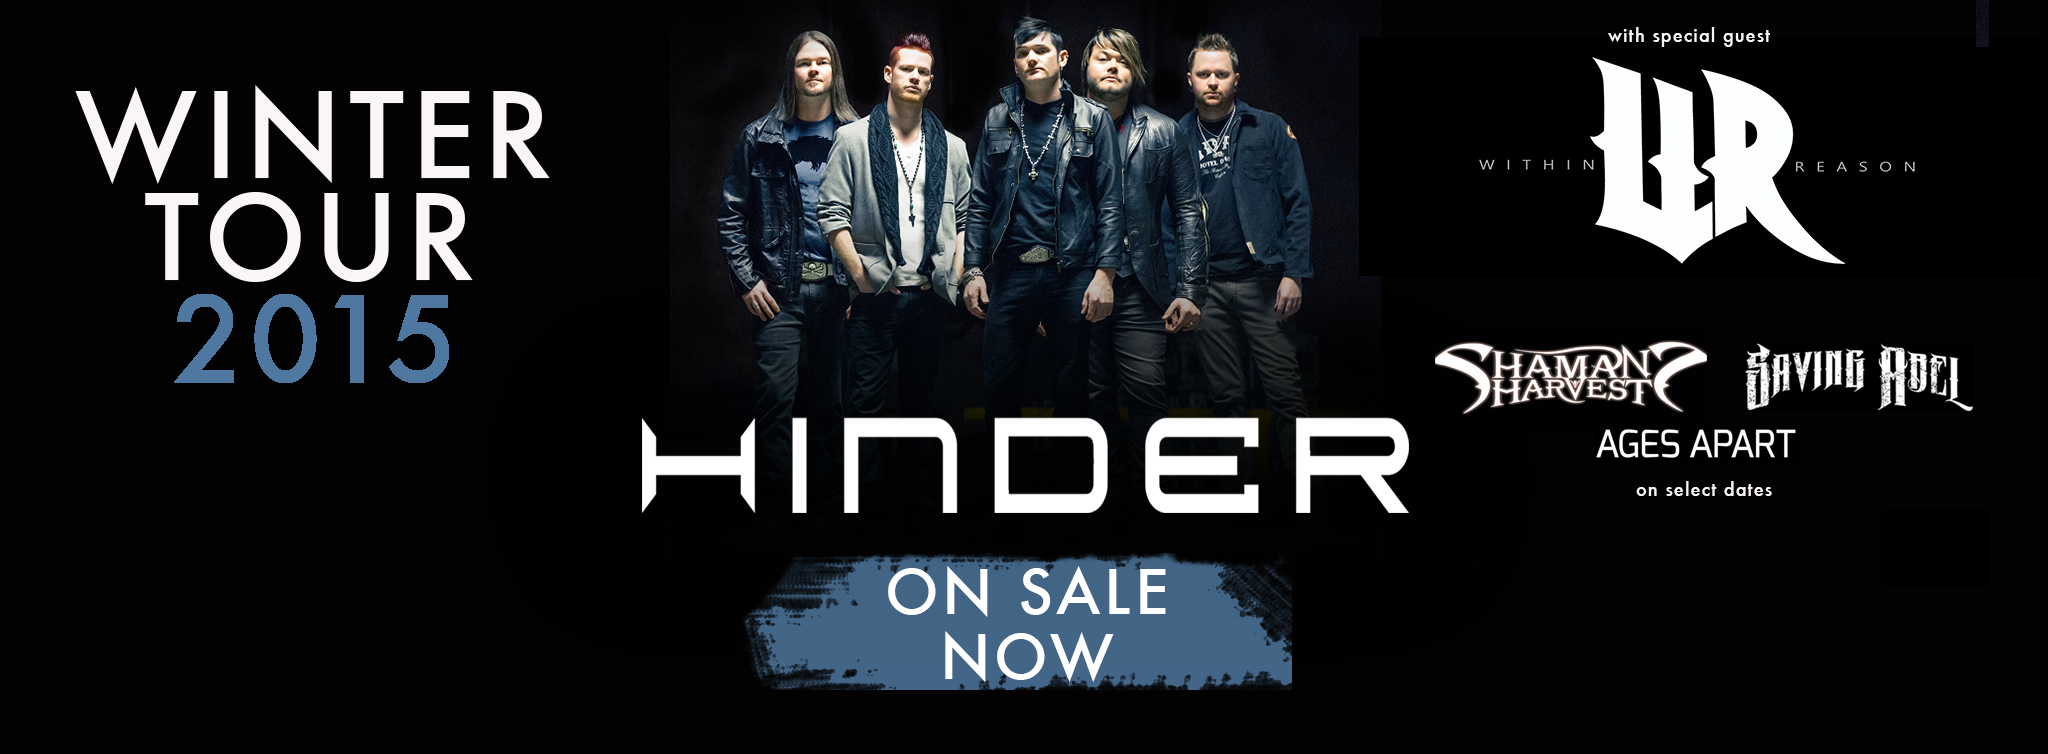 Hard Rockers WITHIN REASON Kick-Off  “Winter Tour 2015” Tour